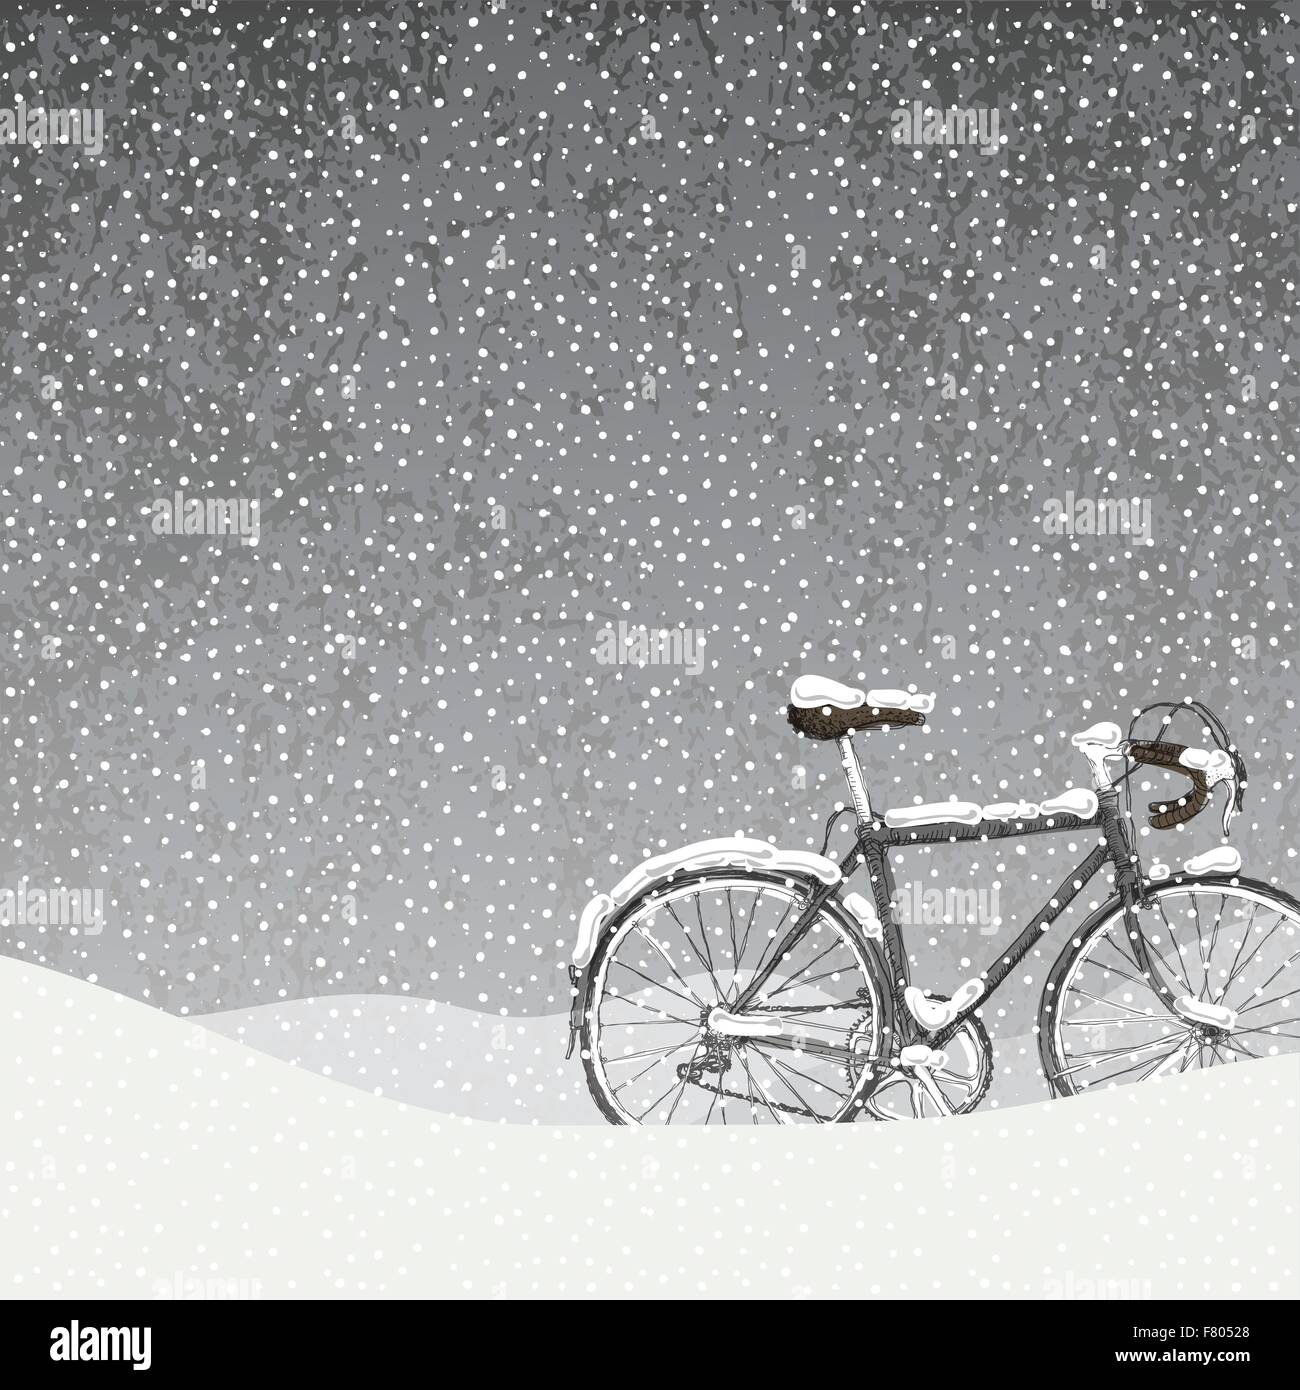 Coperte di neve illustrazione di bicicletta, calma scena invernale Illustrazione Vettoriale